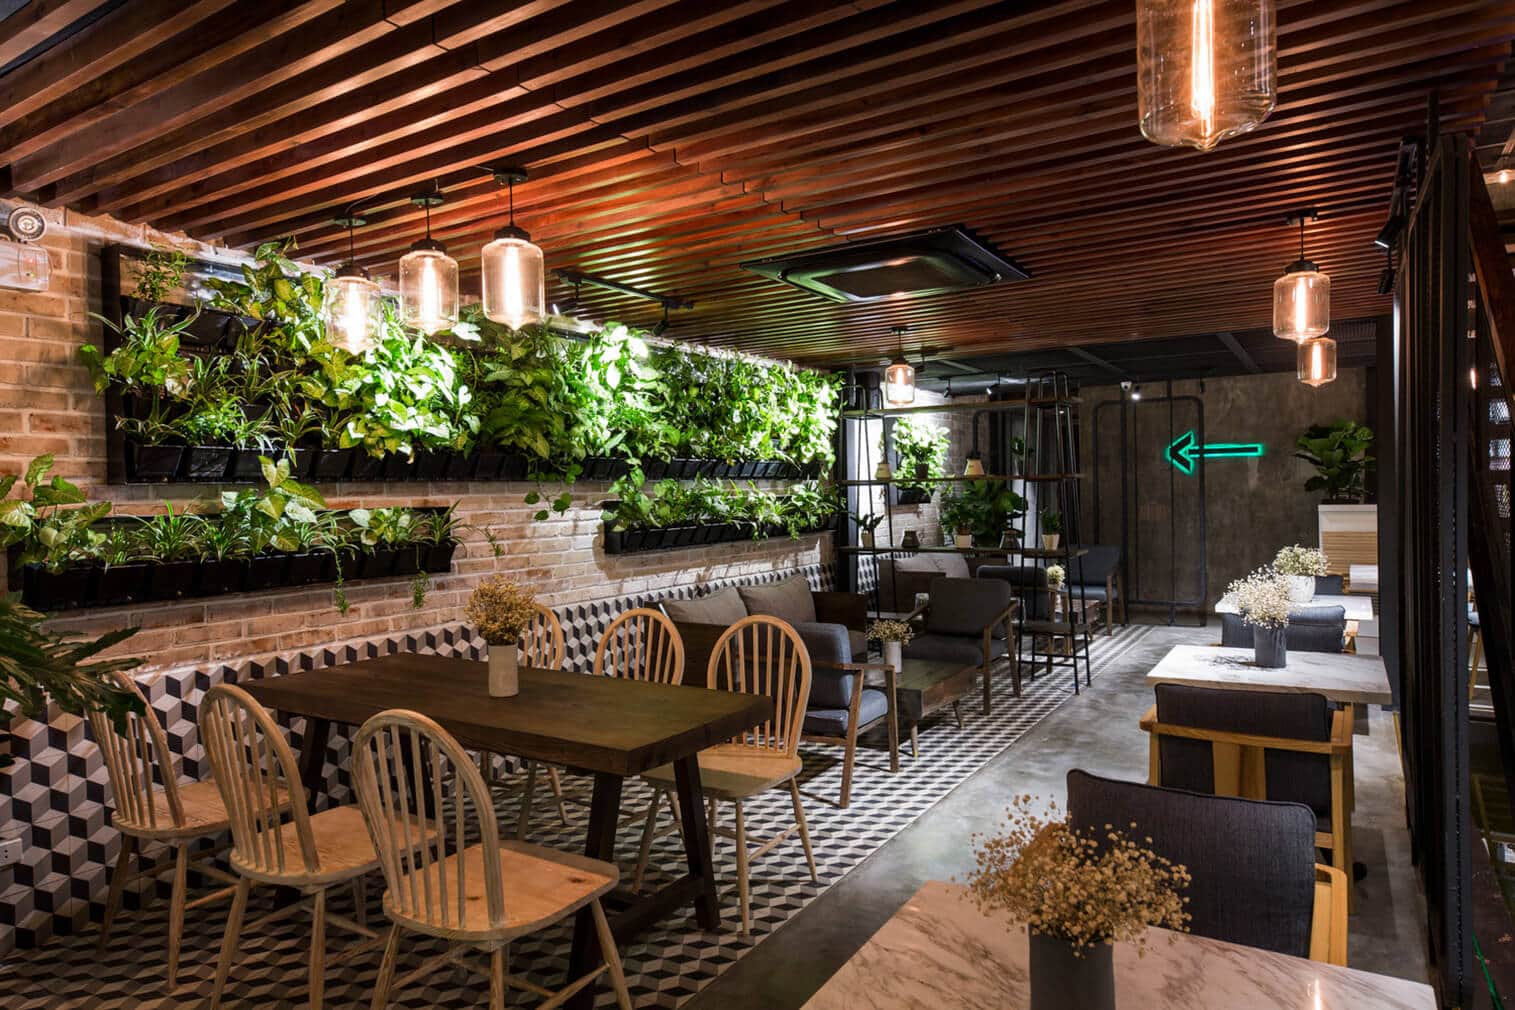  Garden Restaurant Interior Design